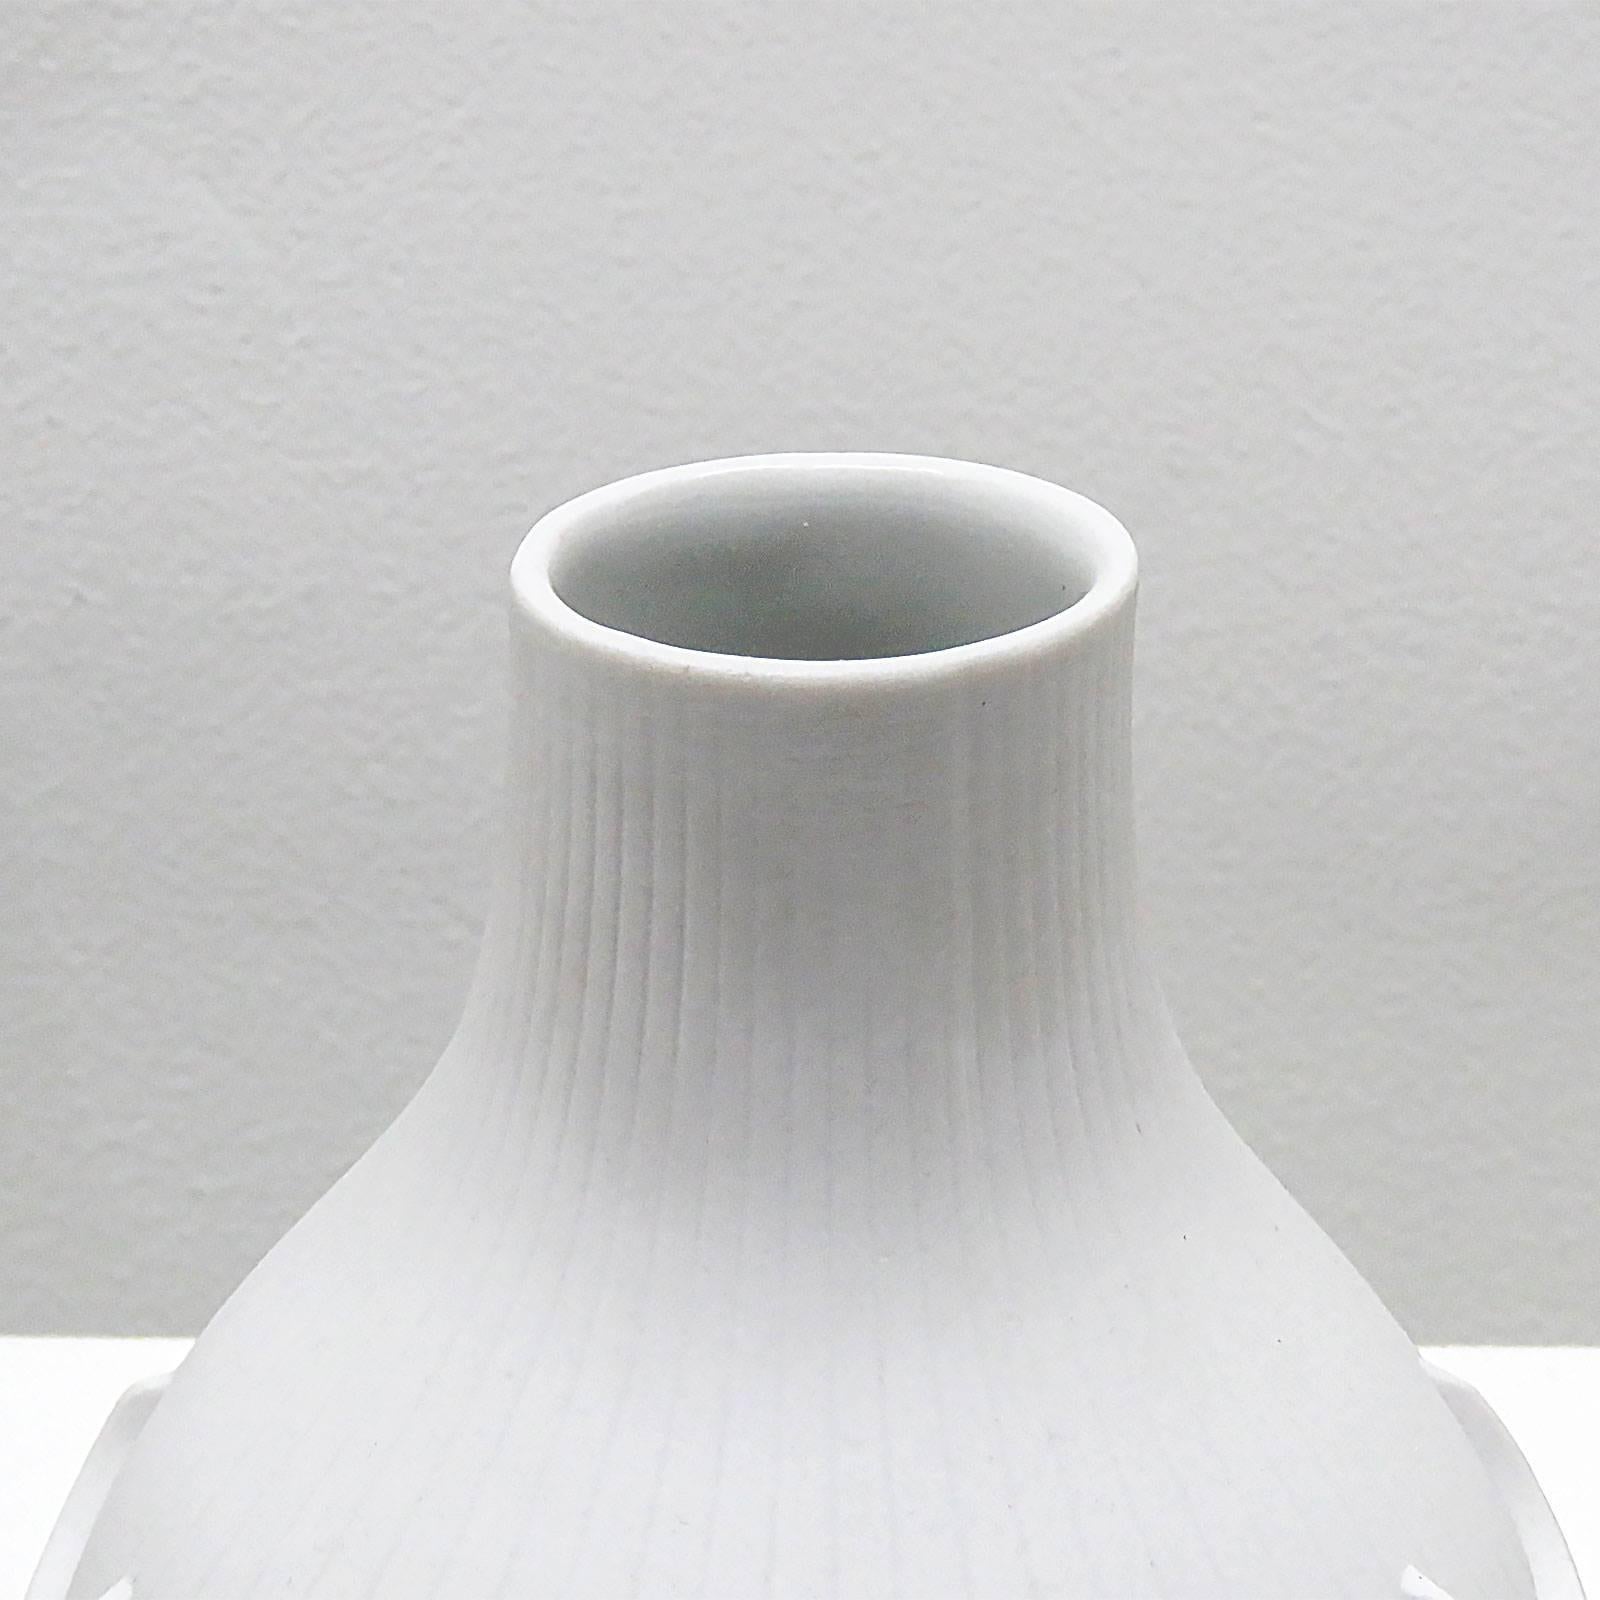 Late 20th Century Op-Art Vase by Werner Uhl for Scherzer